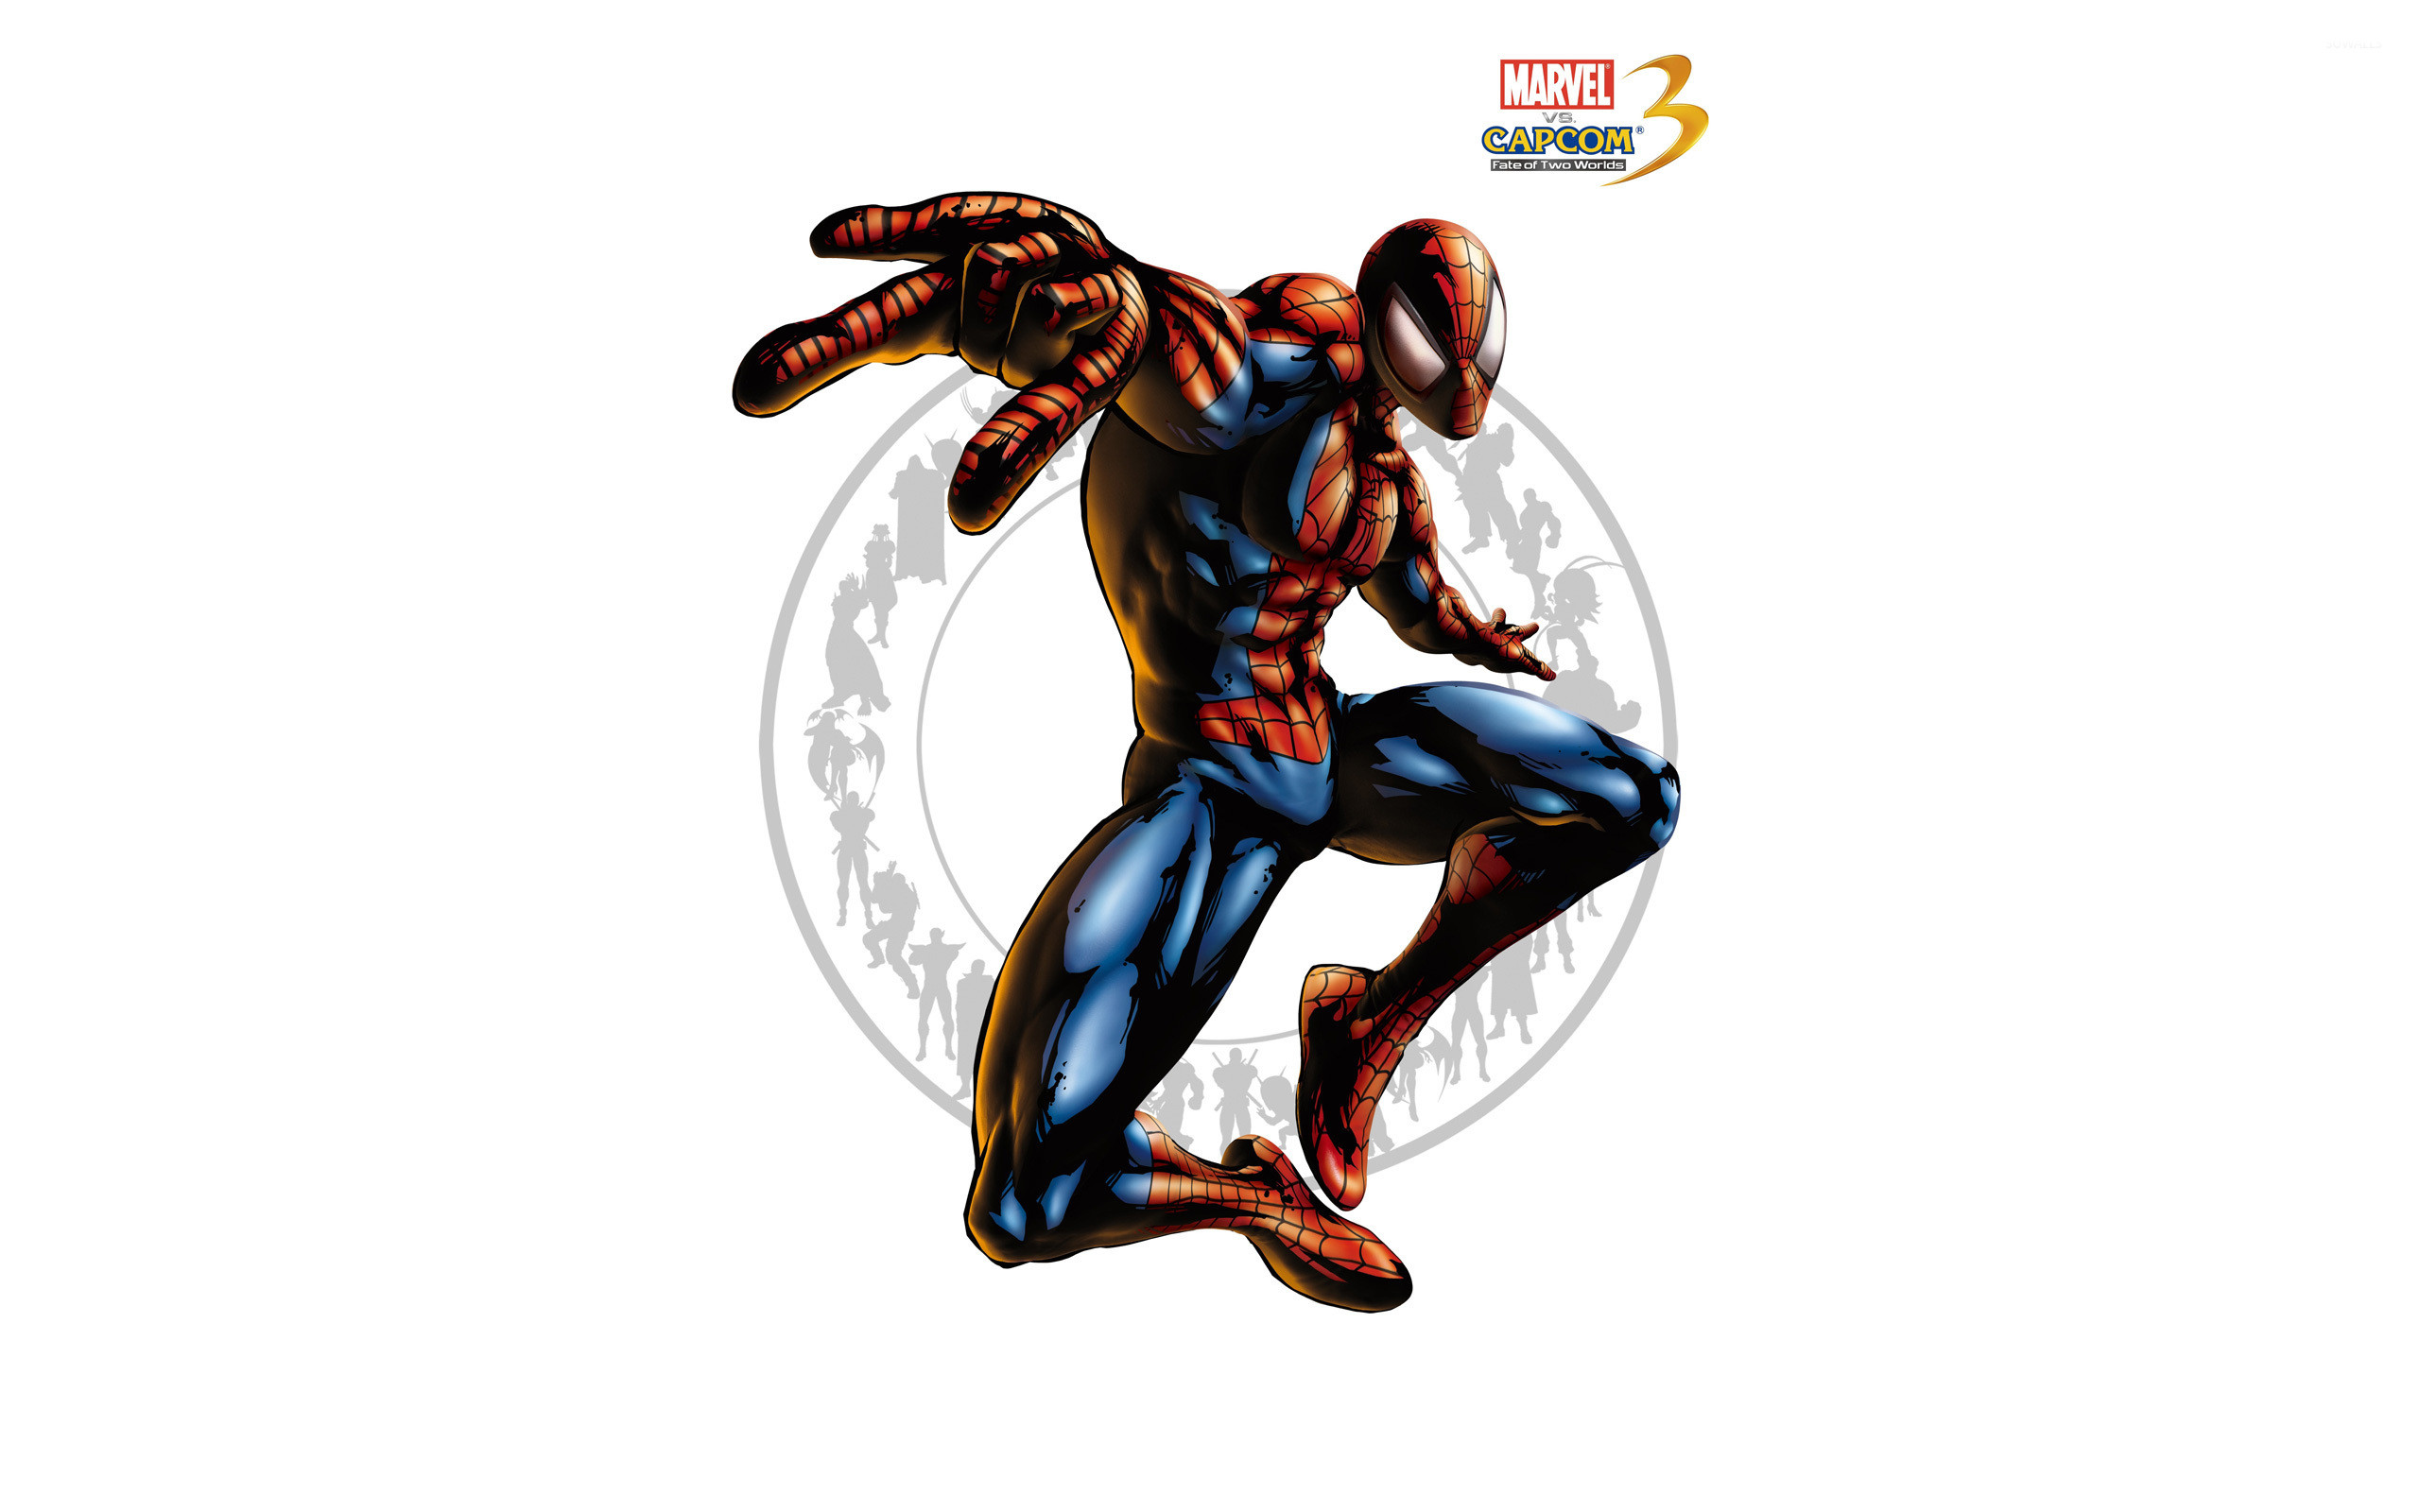 2560x1600 Marvel vs. Capcom 3 - Spider-Man wallpaper  jpg